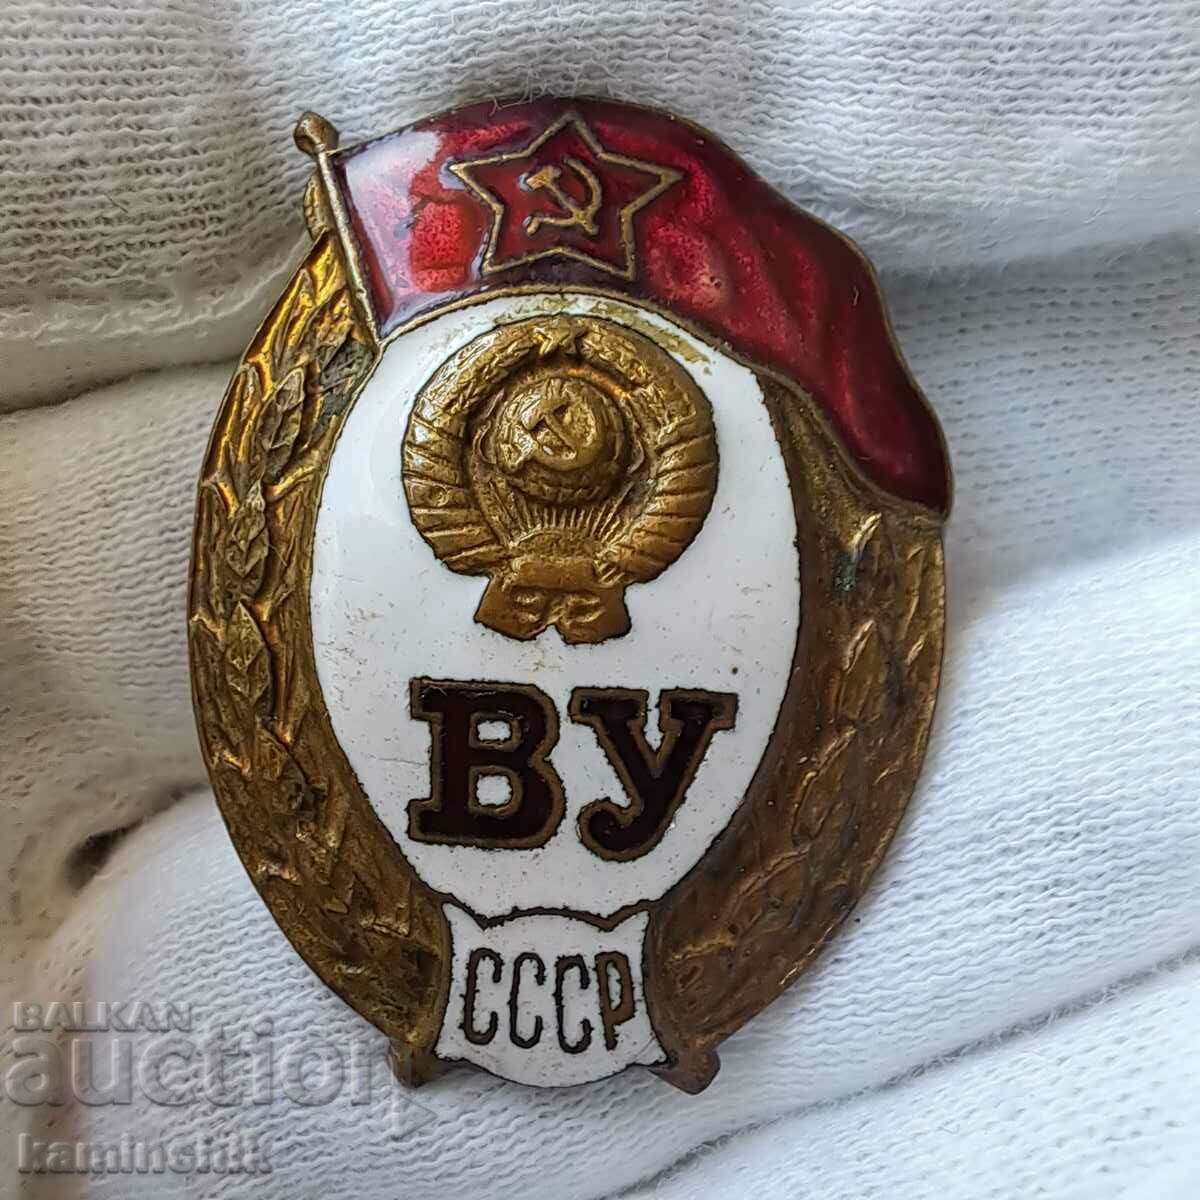 Σήμα της Στρατιωτικής Σχολής της ΕΣΣΔ